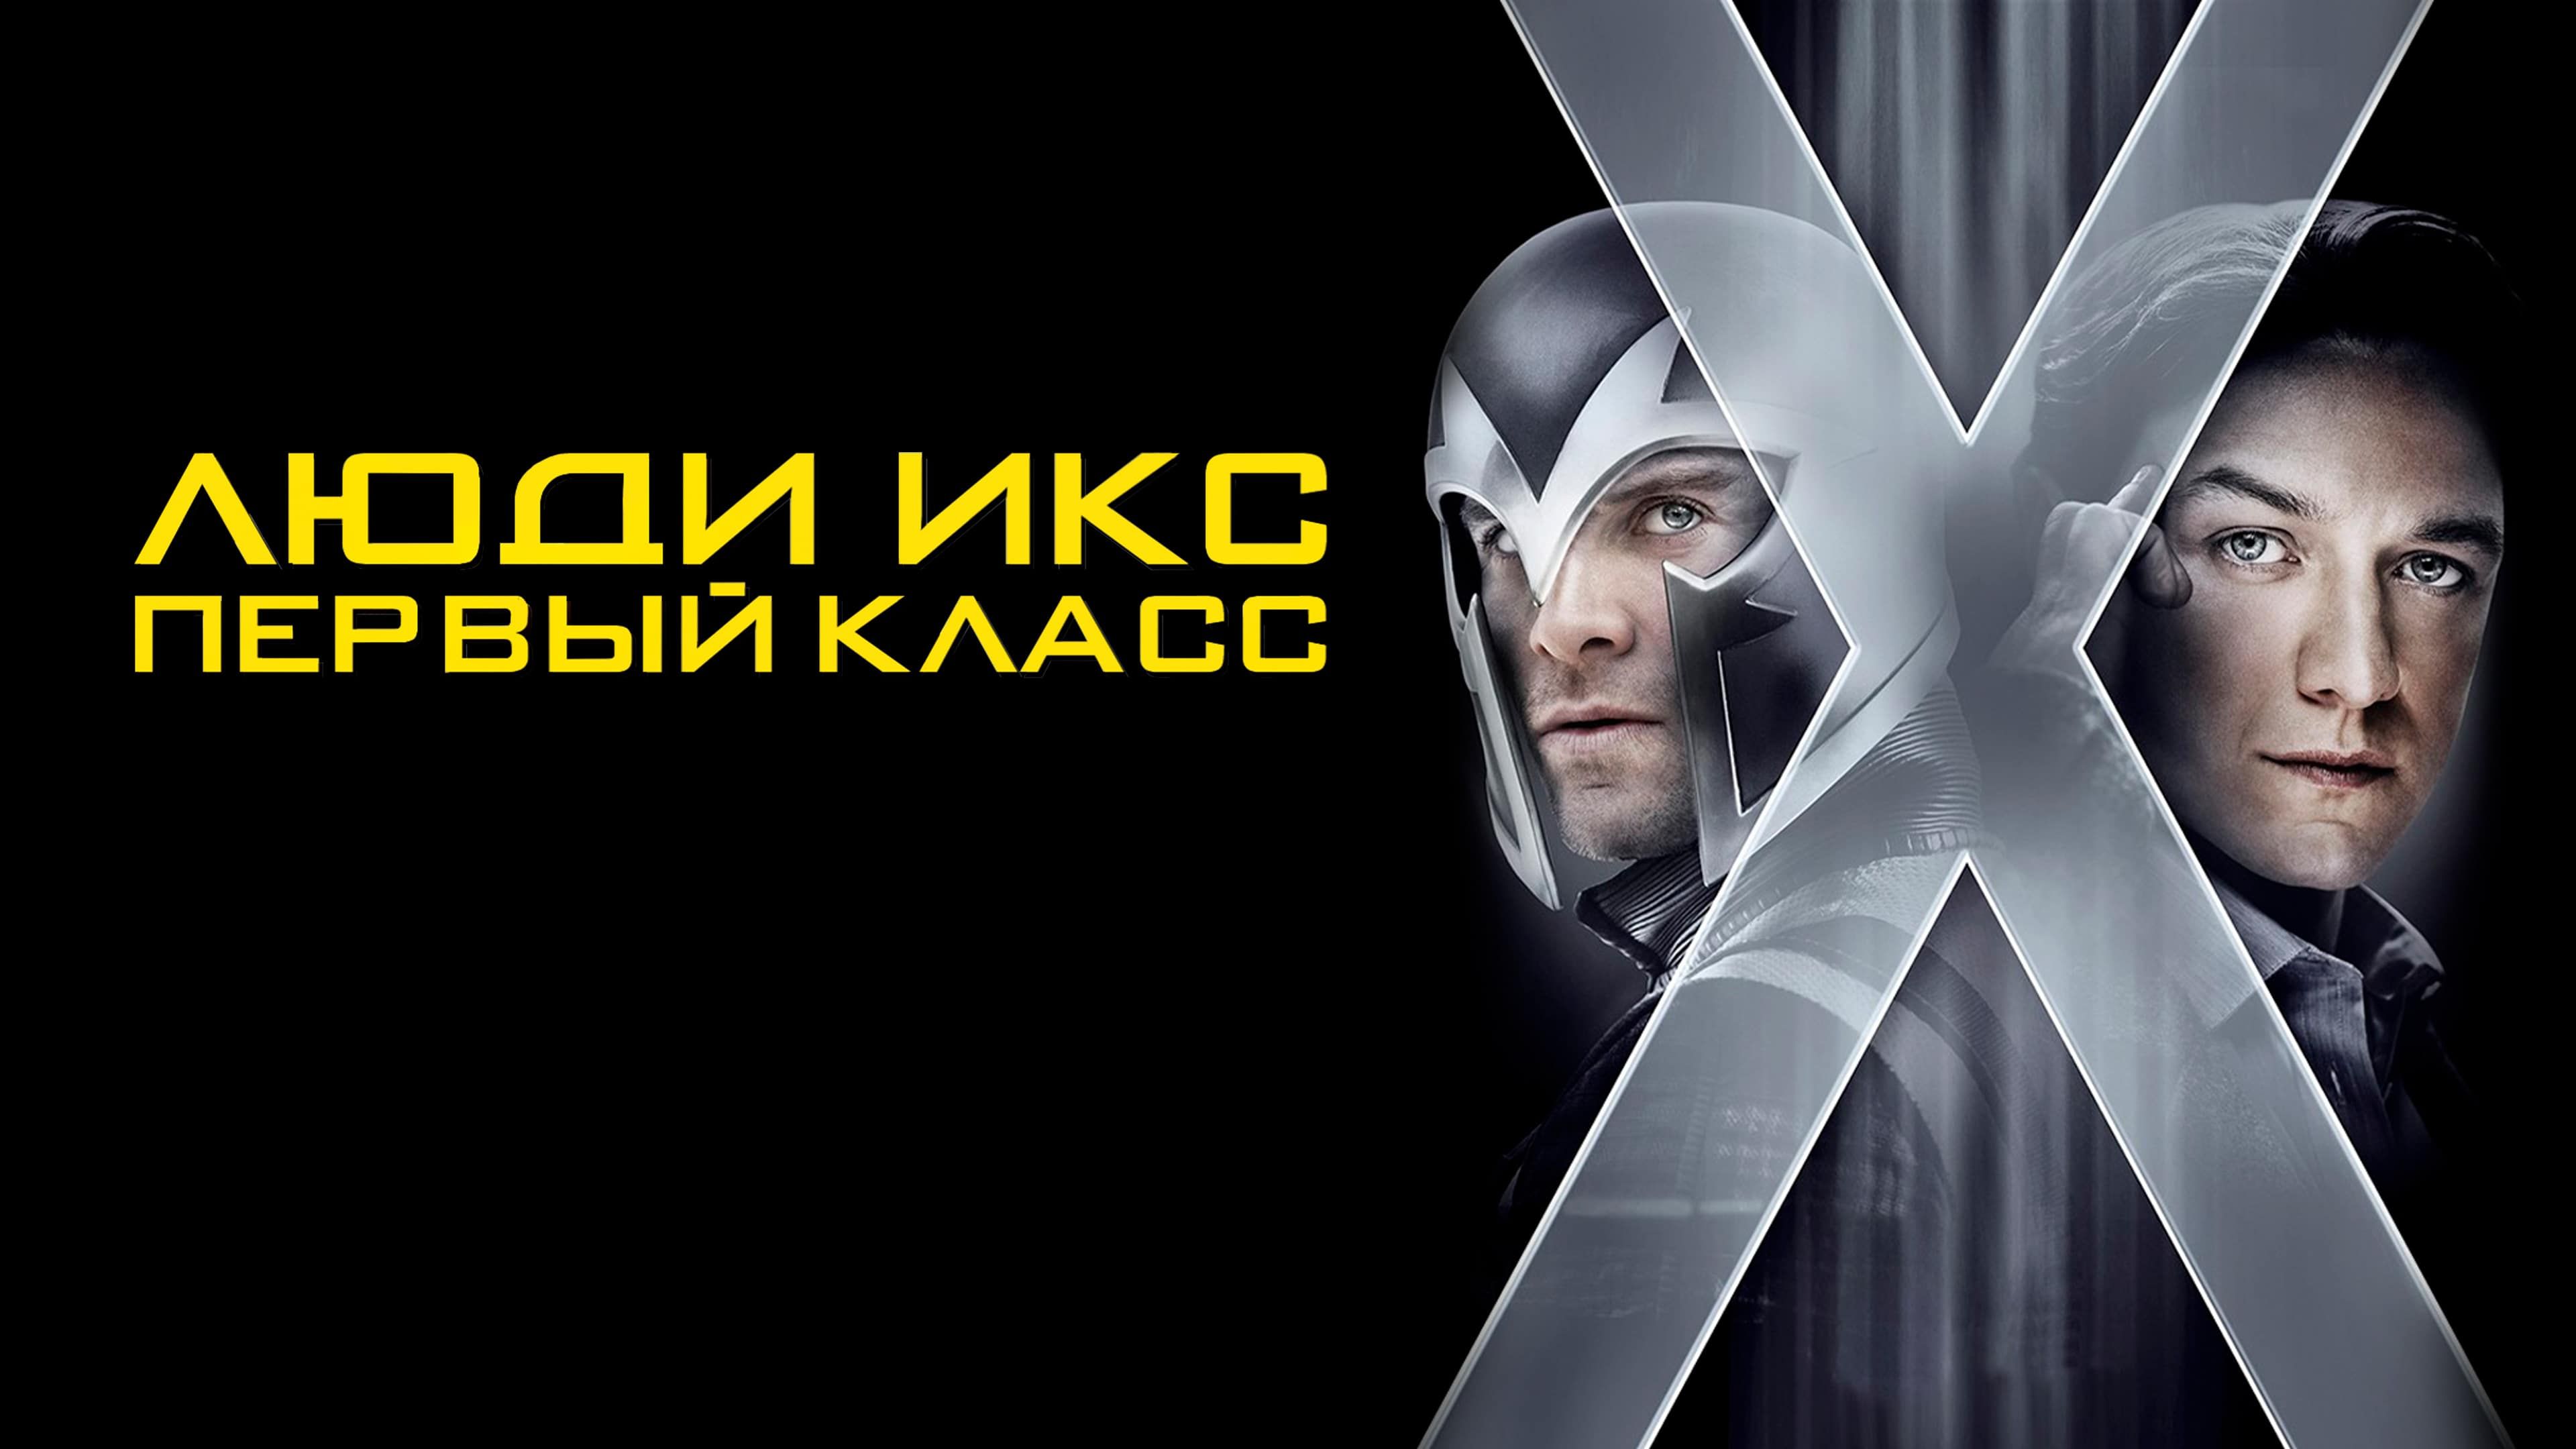 Люди Икс: Первый класс | X-Men: First Class (2011)